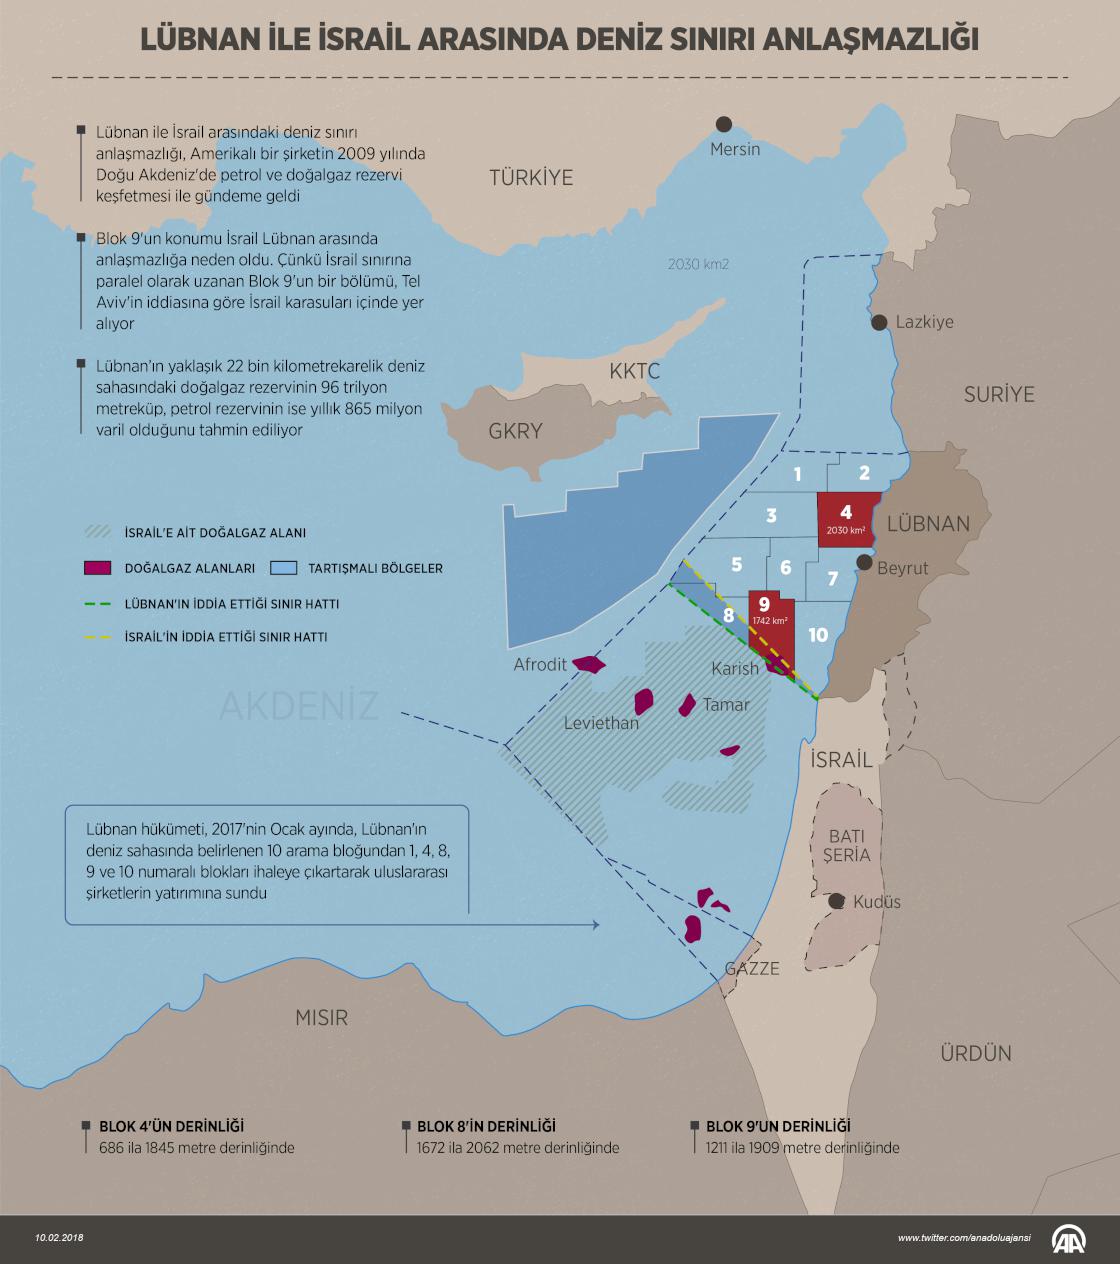 Lübnan ile İsrail arasında deniz sınırı anlaşmazlığı